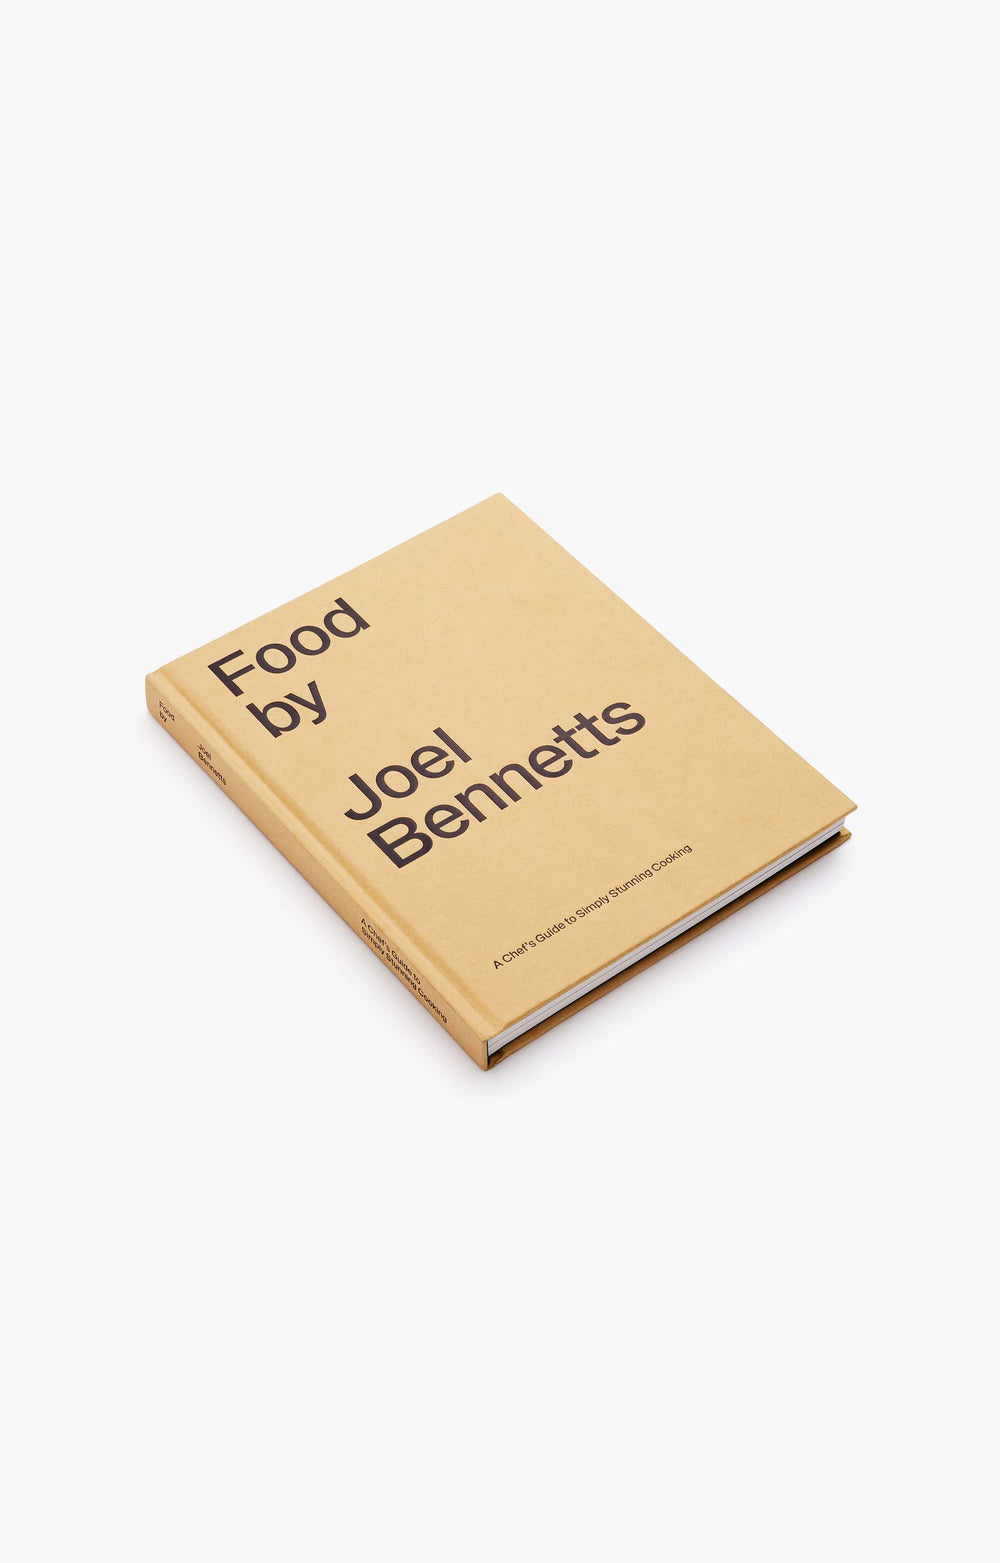 Food by Joel Bennetts